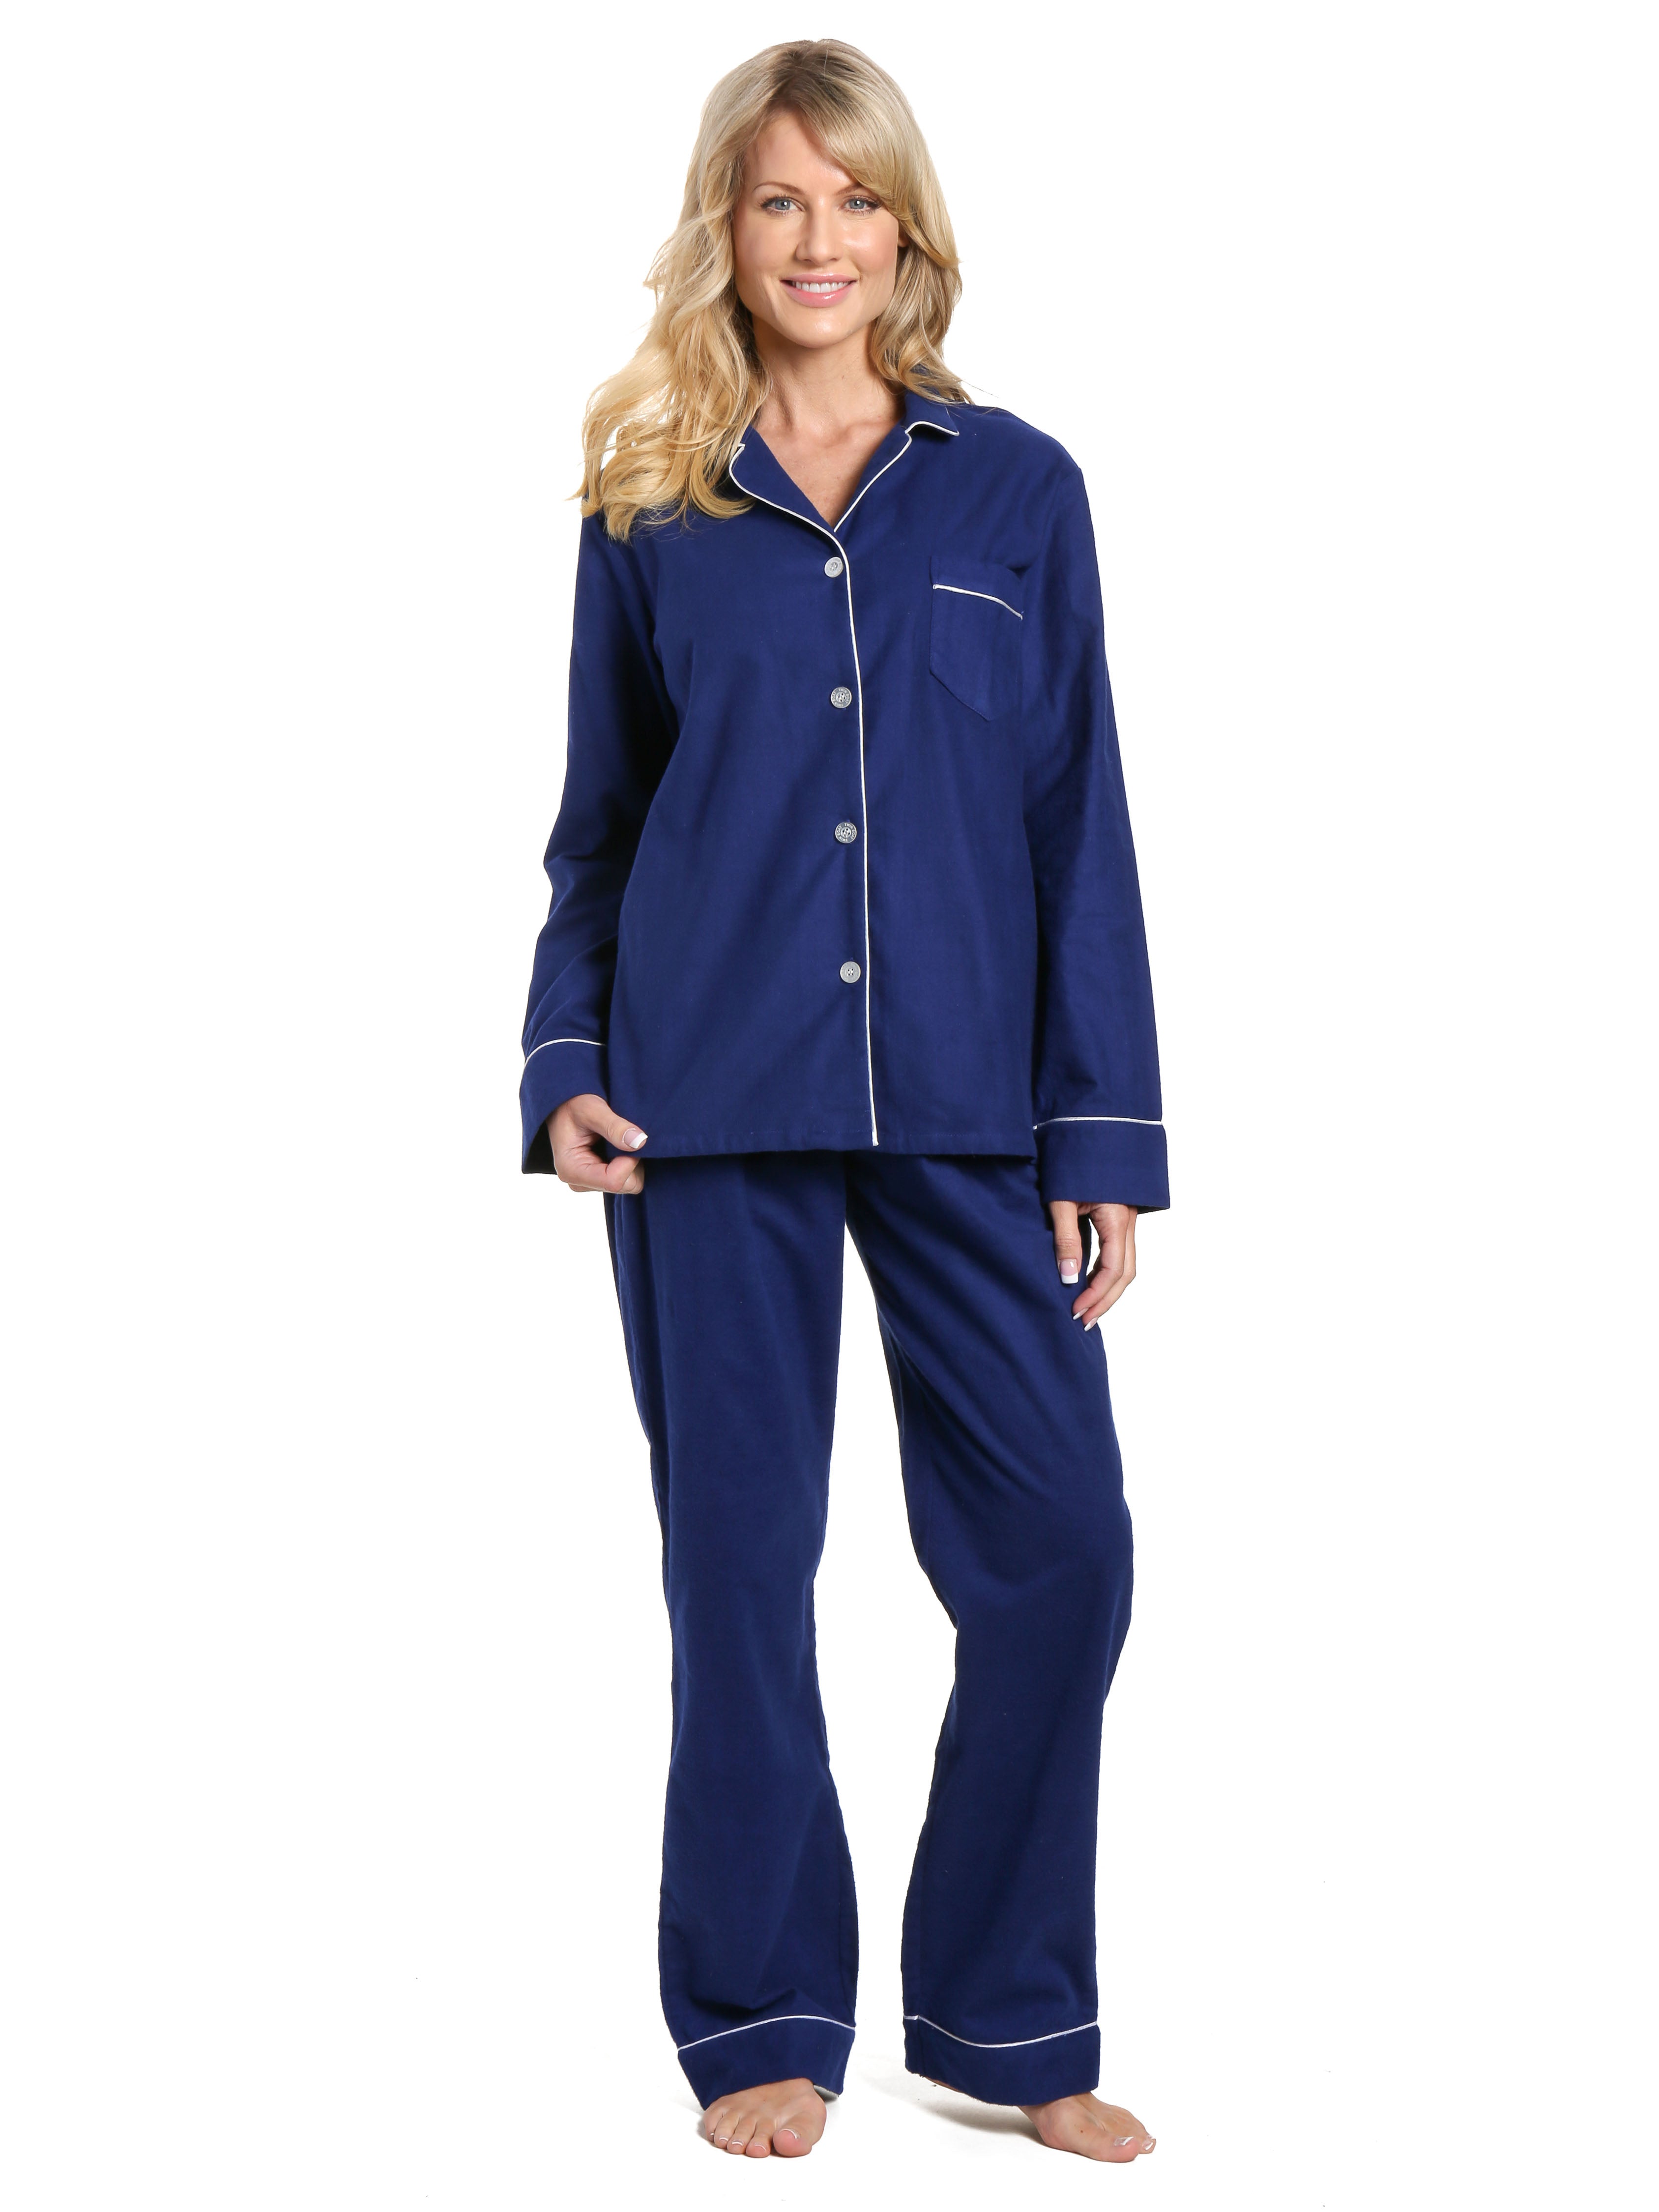 Women's 100% Cotton Flannel Pajama Sleepwear Set - Midnight Blue